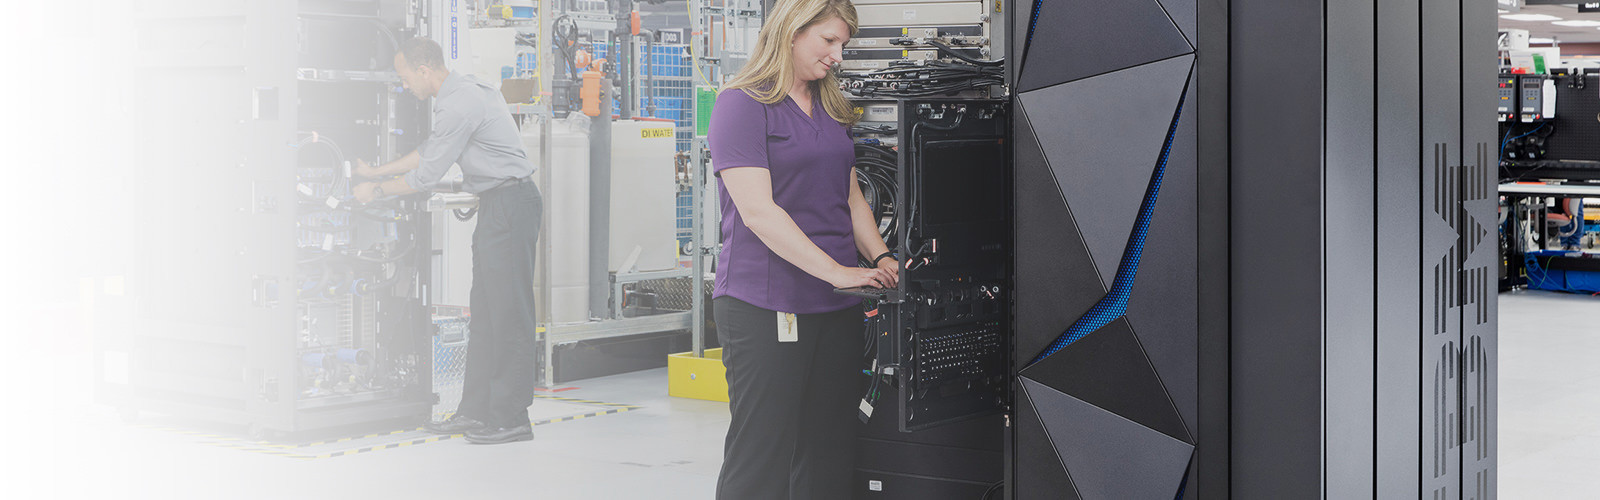 femme travaillant sur un serveur IBM